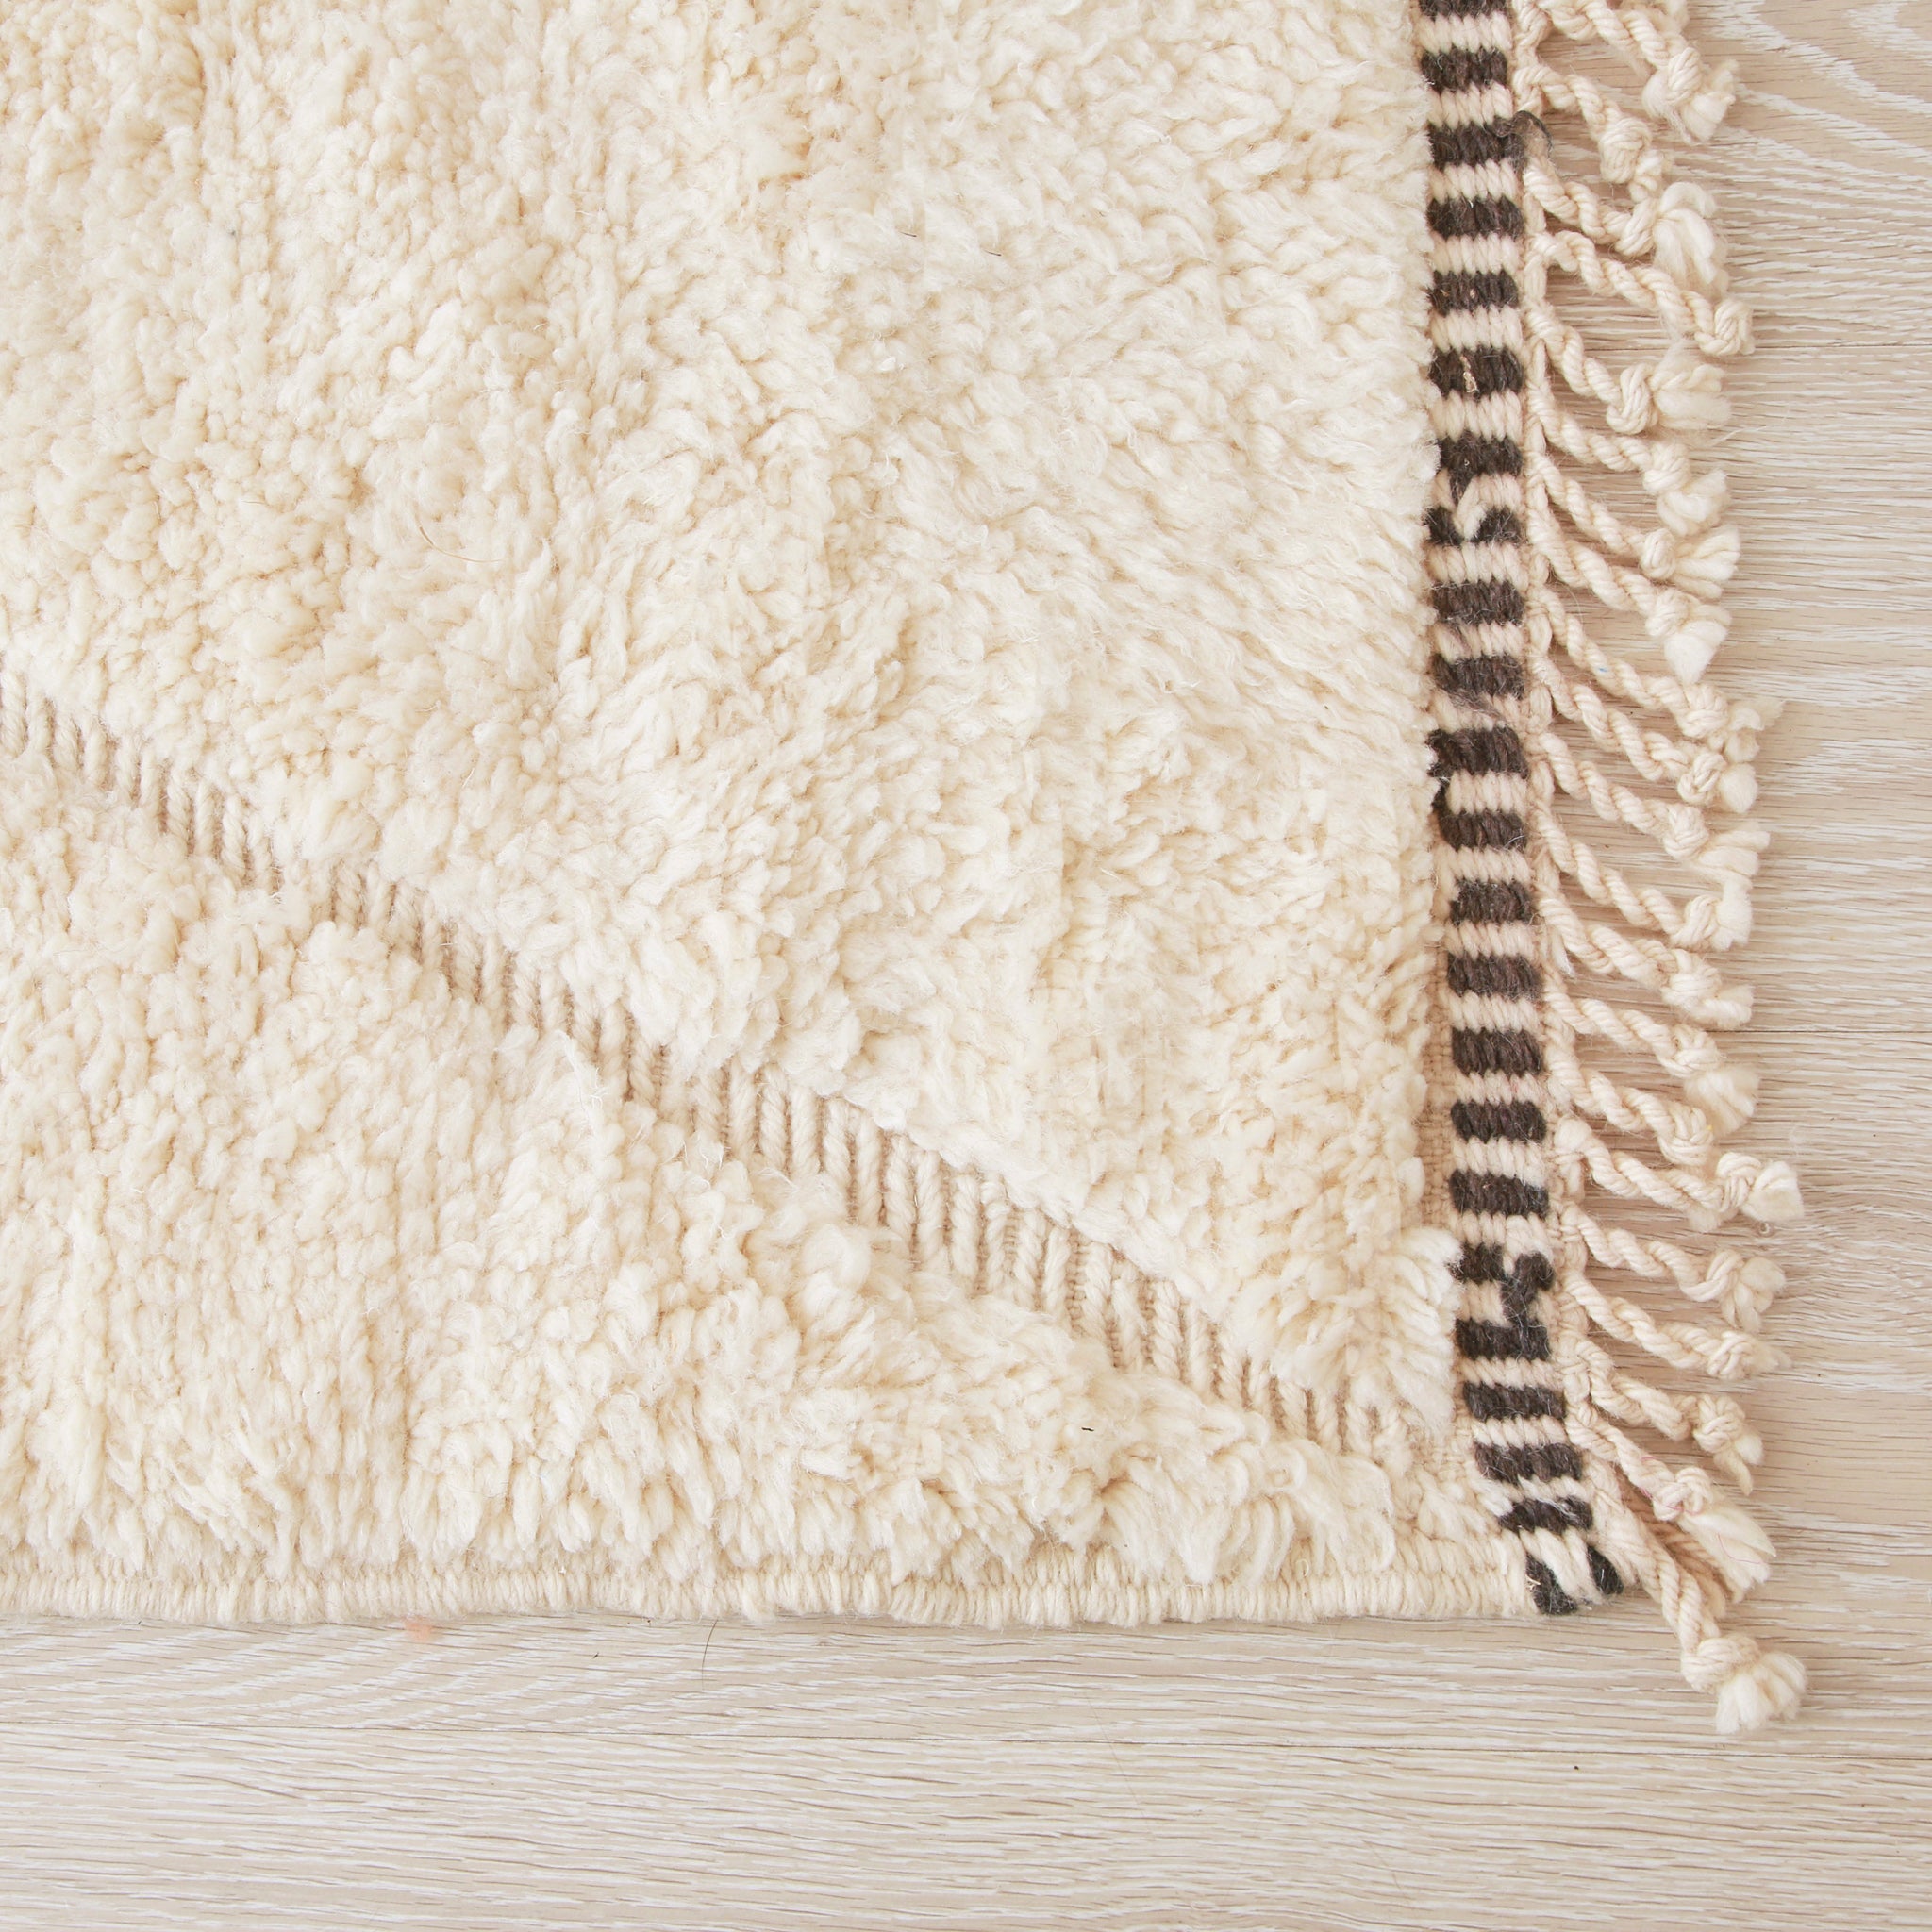 angolo di un tappeto beni mrirt in lana bianca e bordo della frangia a linee bianco e nero